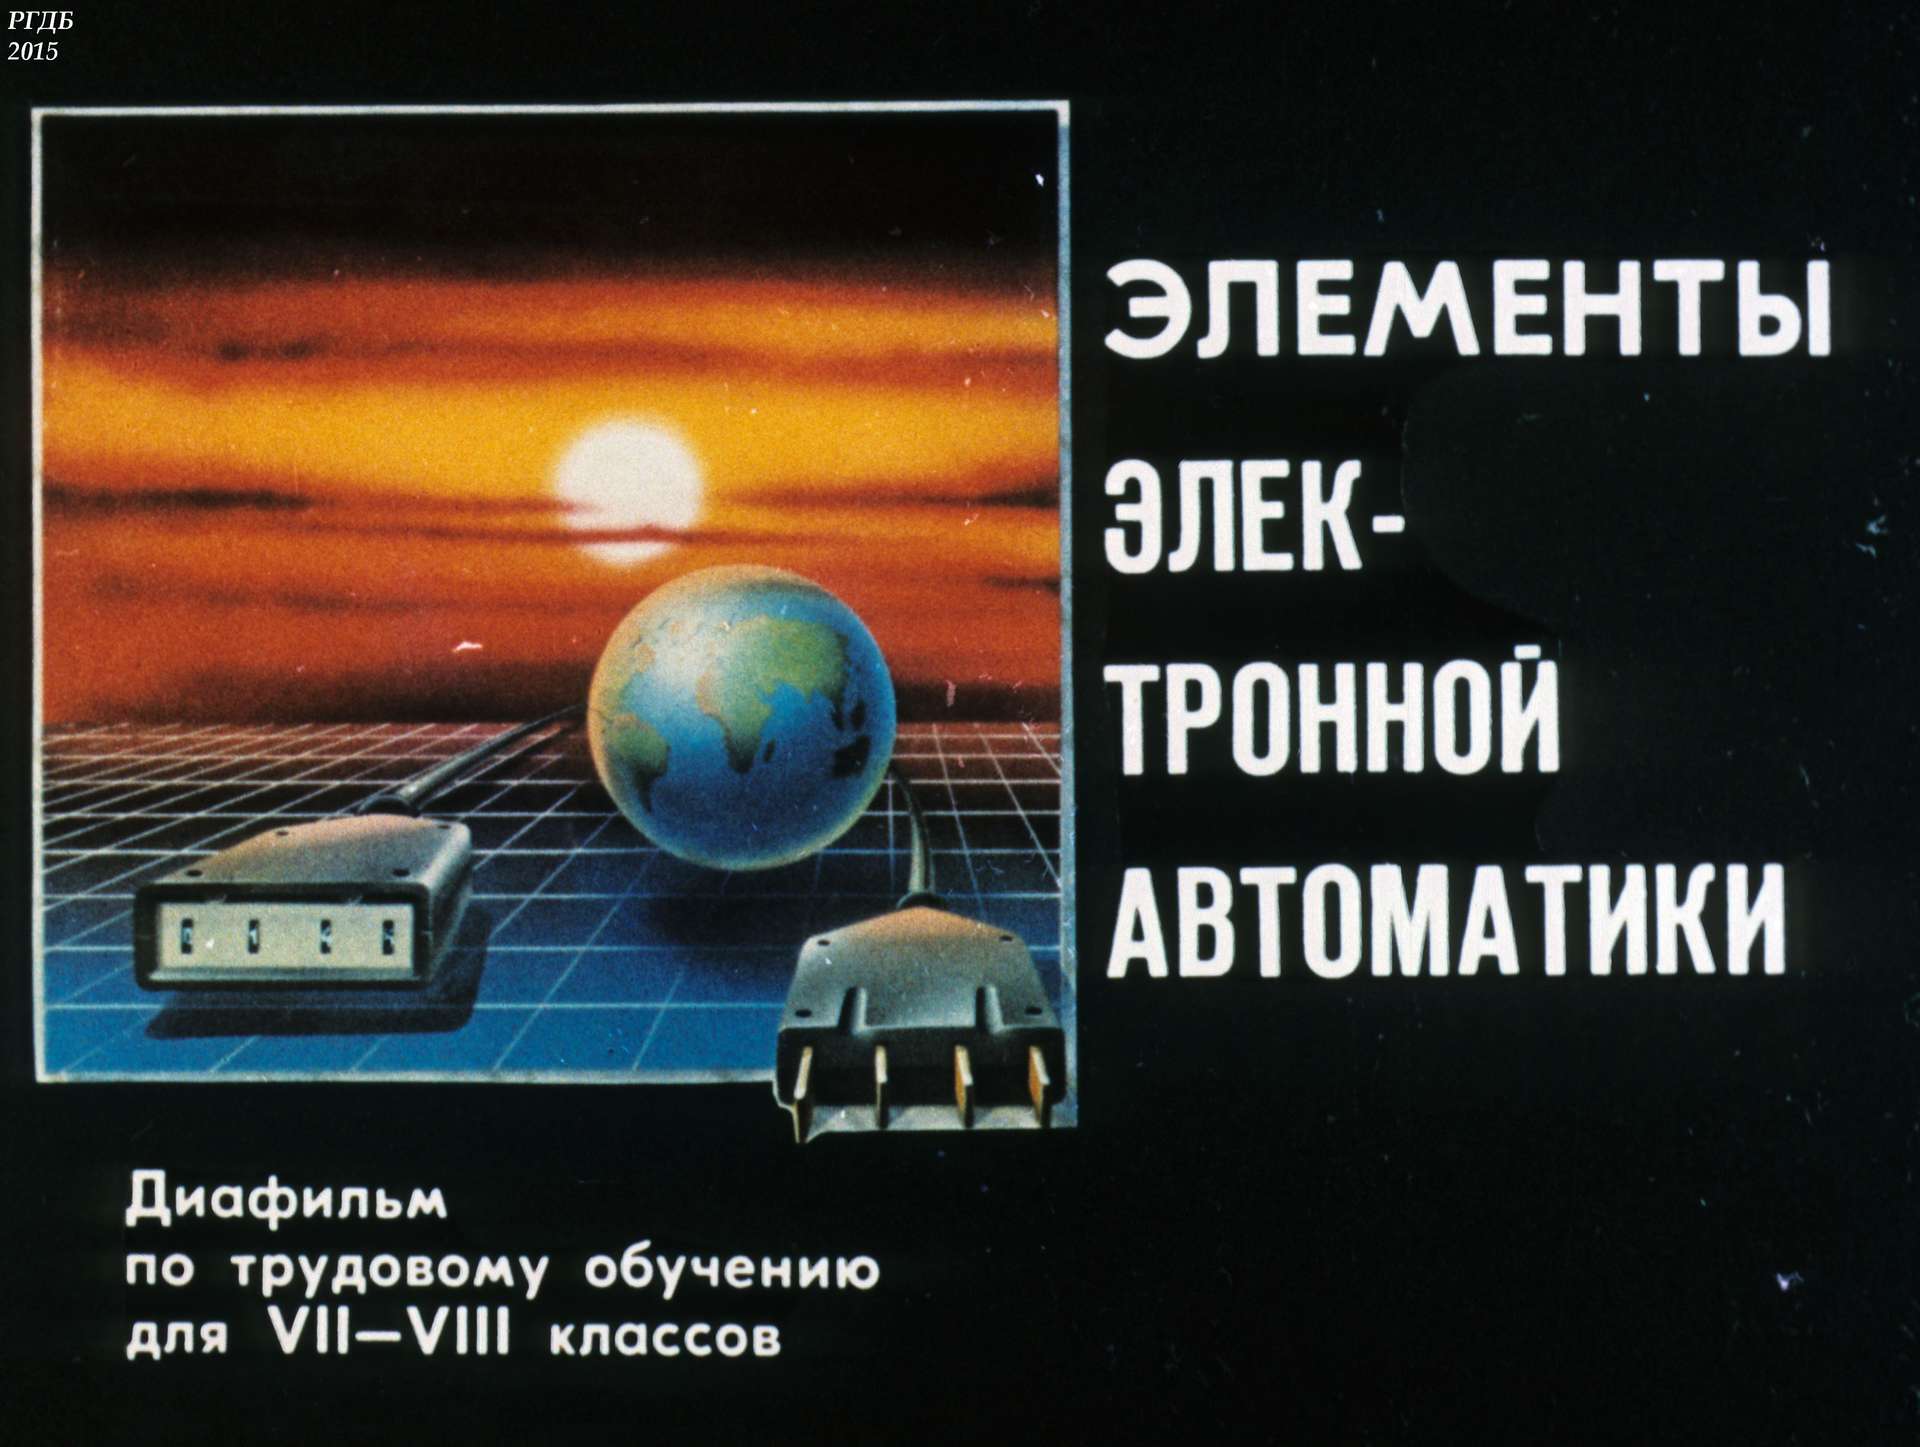 Огиевич Л. - Элементы электронной автоматики - 1991